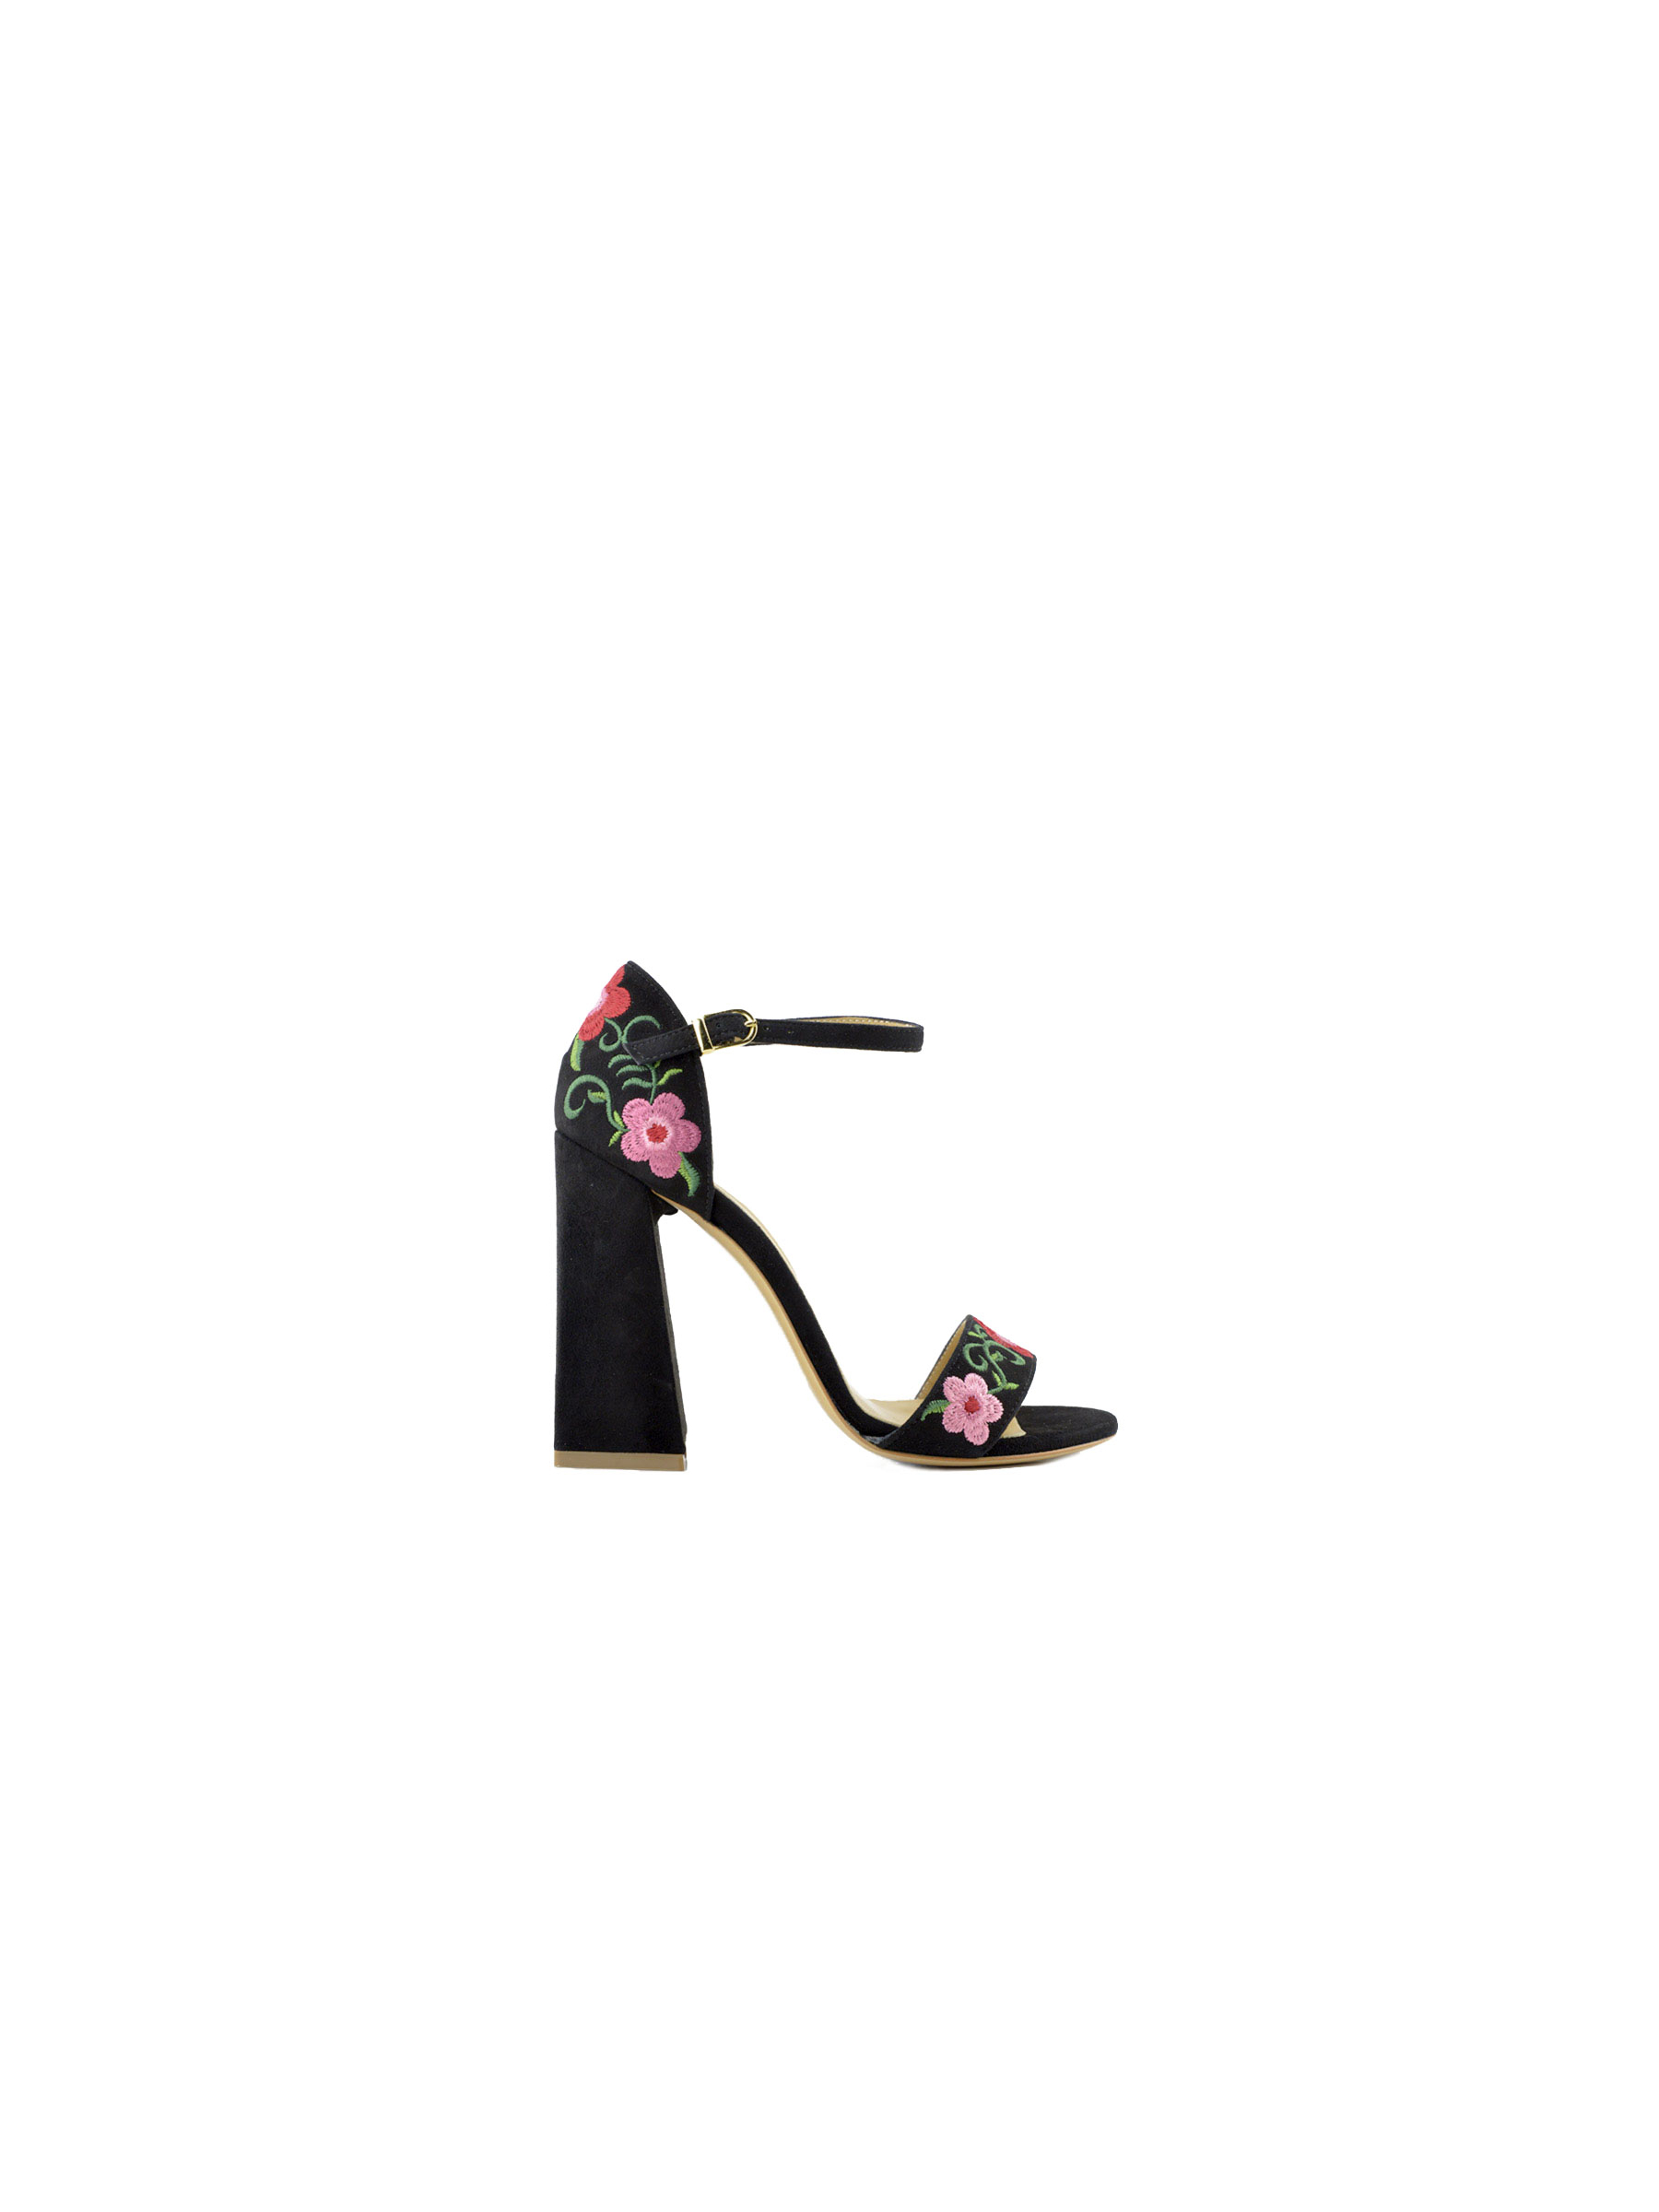 Sandalo alto donna scamosciato con ricamo floreale nero